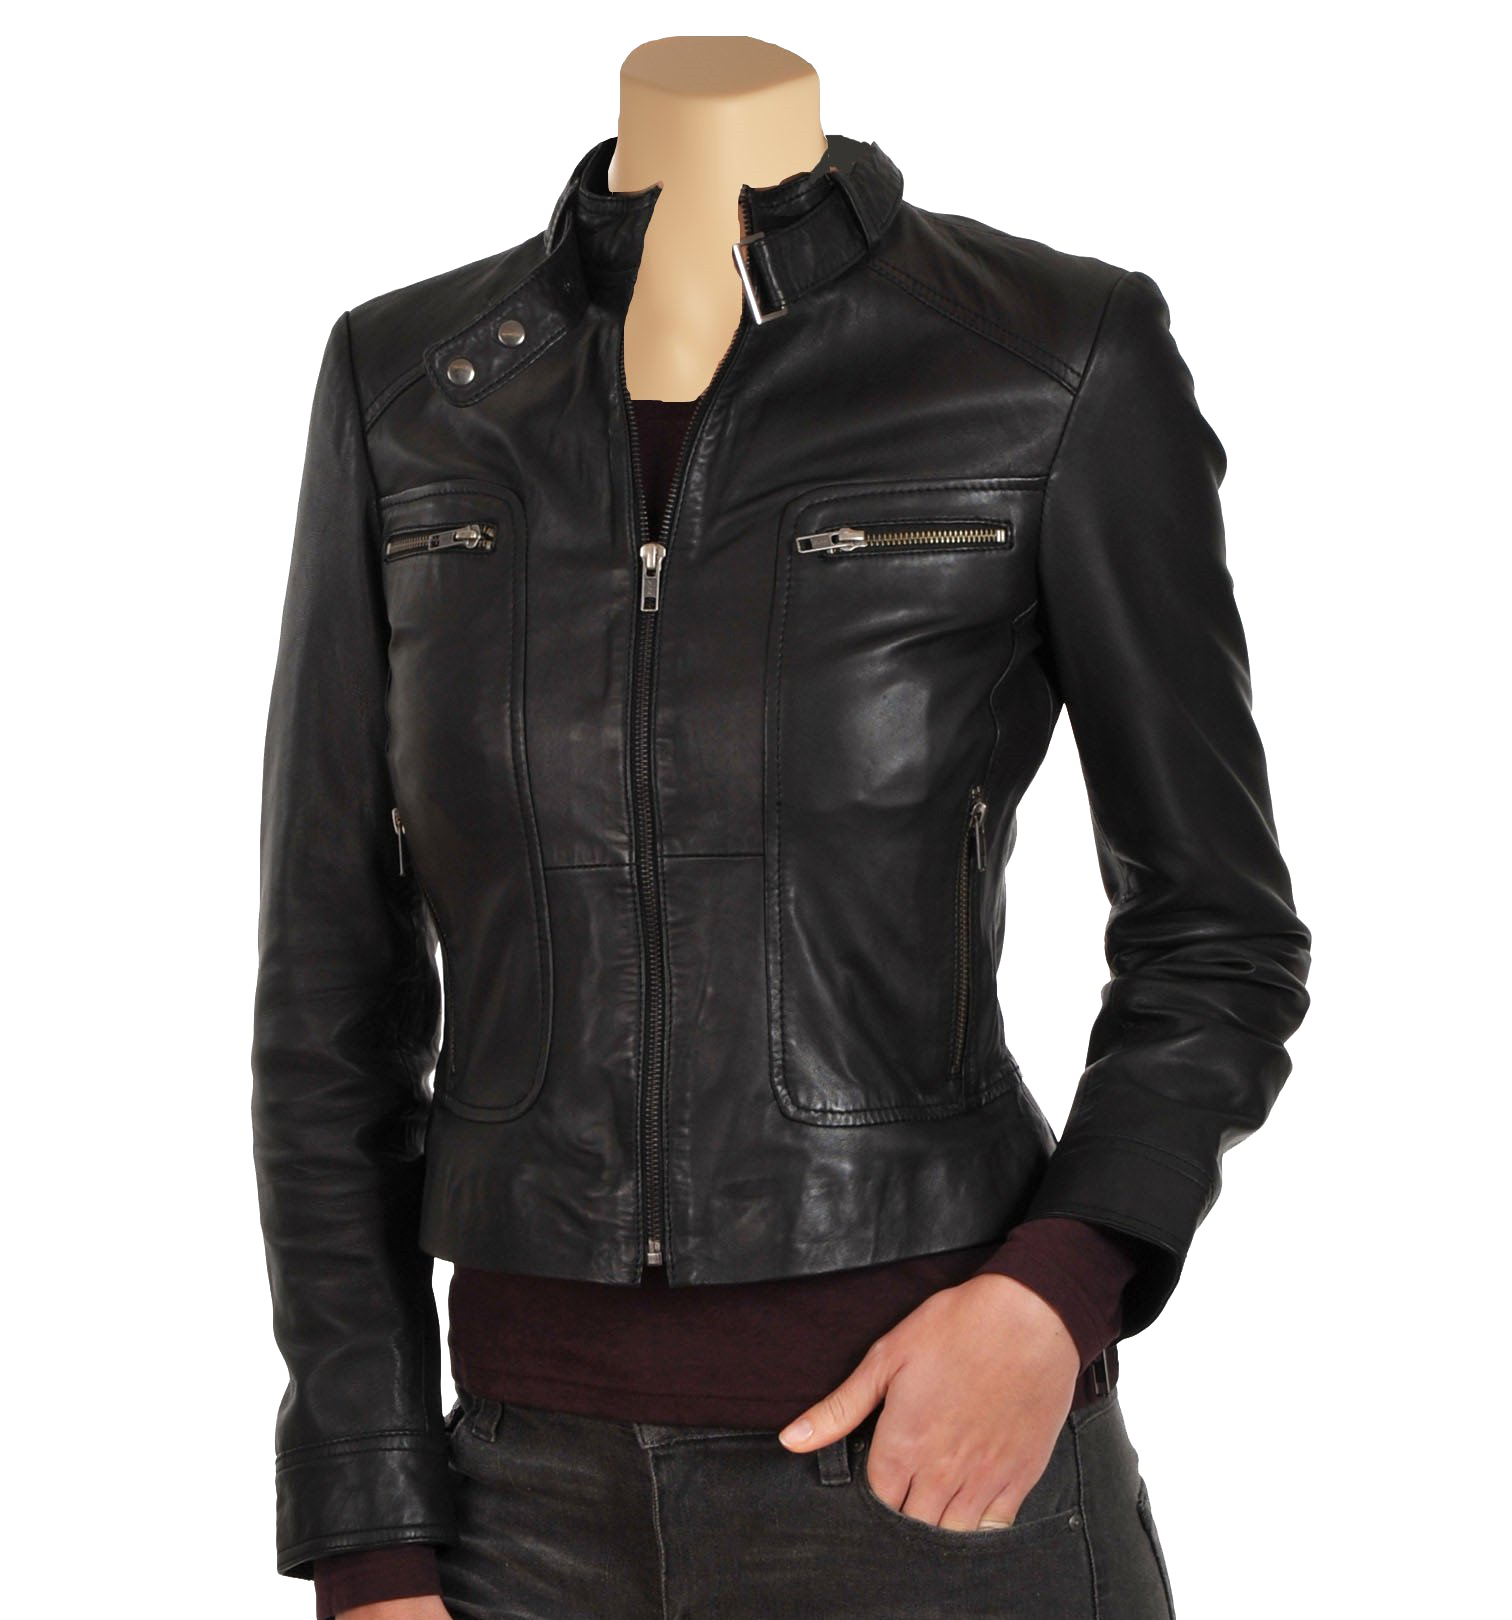 Black Leather Jacket PNG Transparent Image